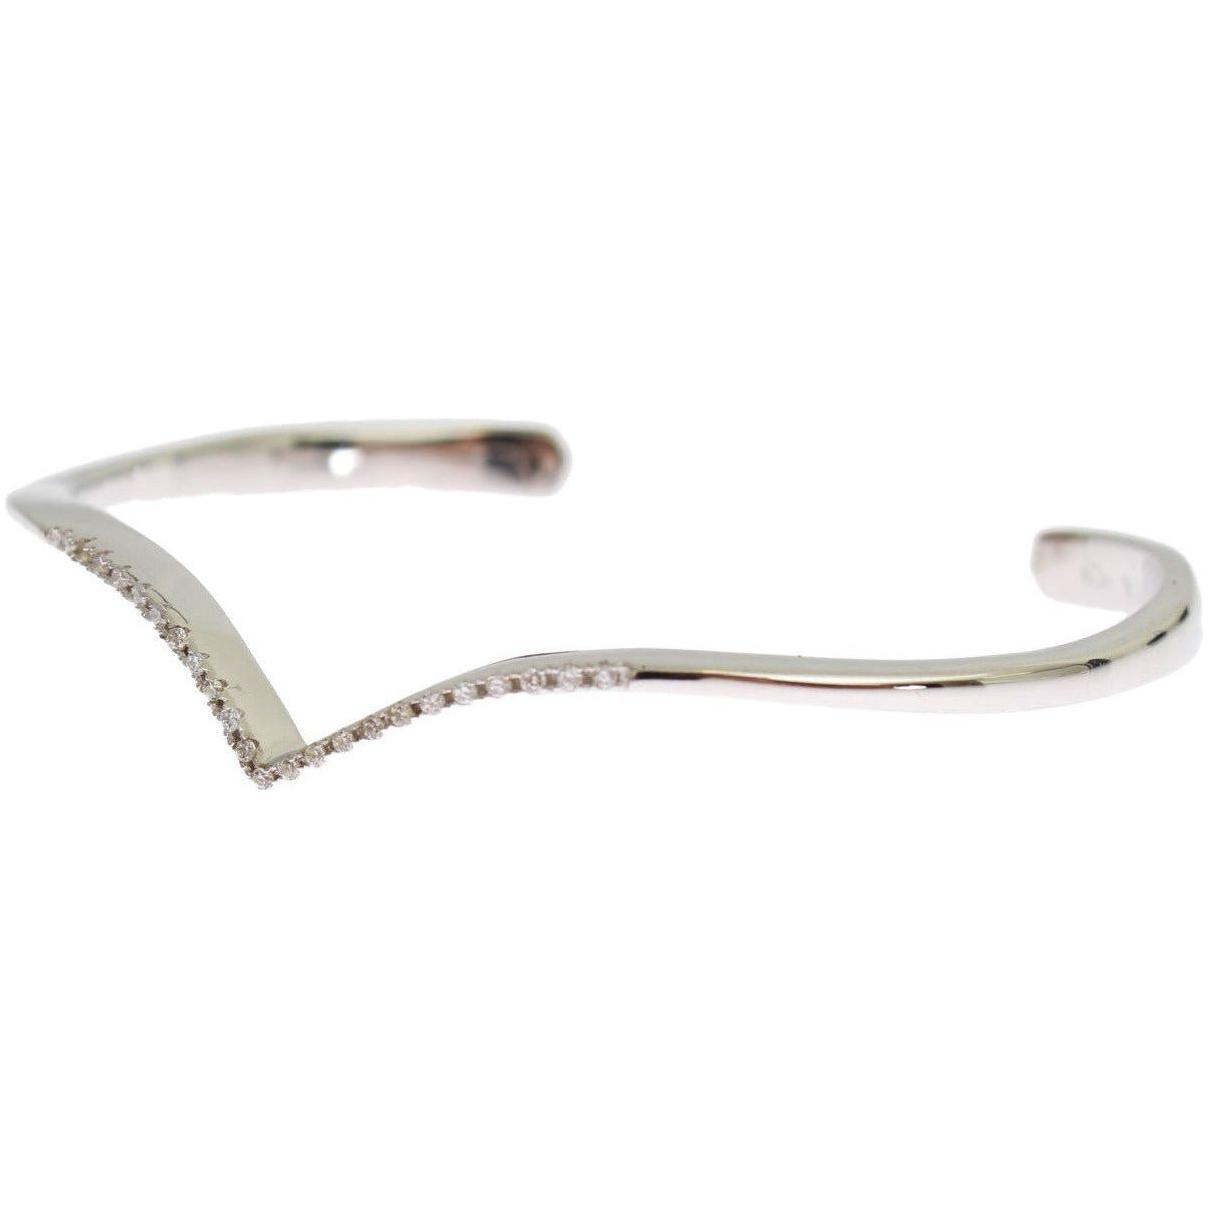 Nialaya Elegant Silver Bangle Cuff with Clear CZ Accents skyfall-cz-925-silver-bangle-bracelet Bracelet 85137-skyfall-cz-925-silver-bangle-bracelet-1_28168024-1de1-4a80-a96d-0621975c4a8f.jpg